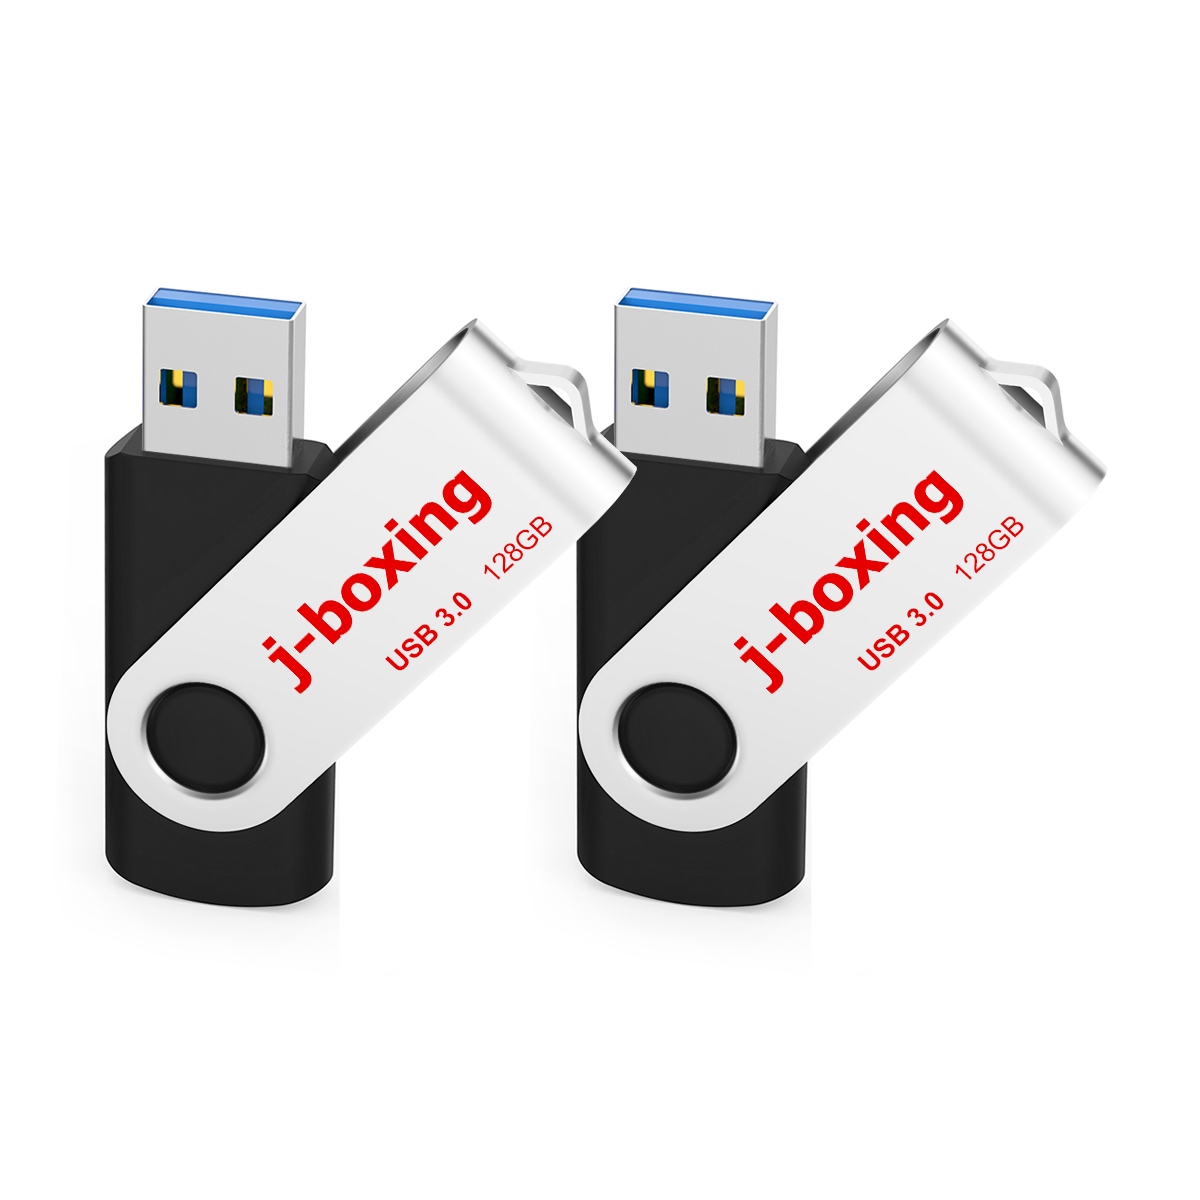 Confezione da 2 unità flash USB da 128 GB, memory stick 3.0 Thumb, 128 GB ad alta velocità per archiviazione dati di computer desktop e laptop